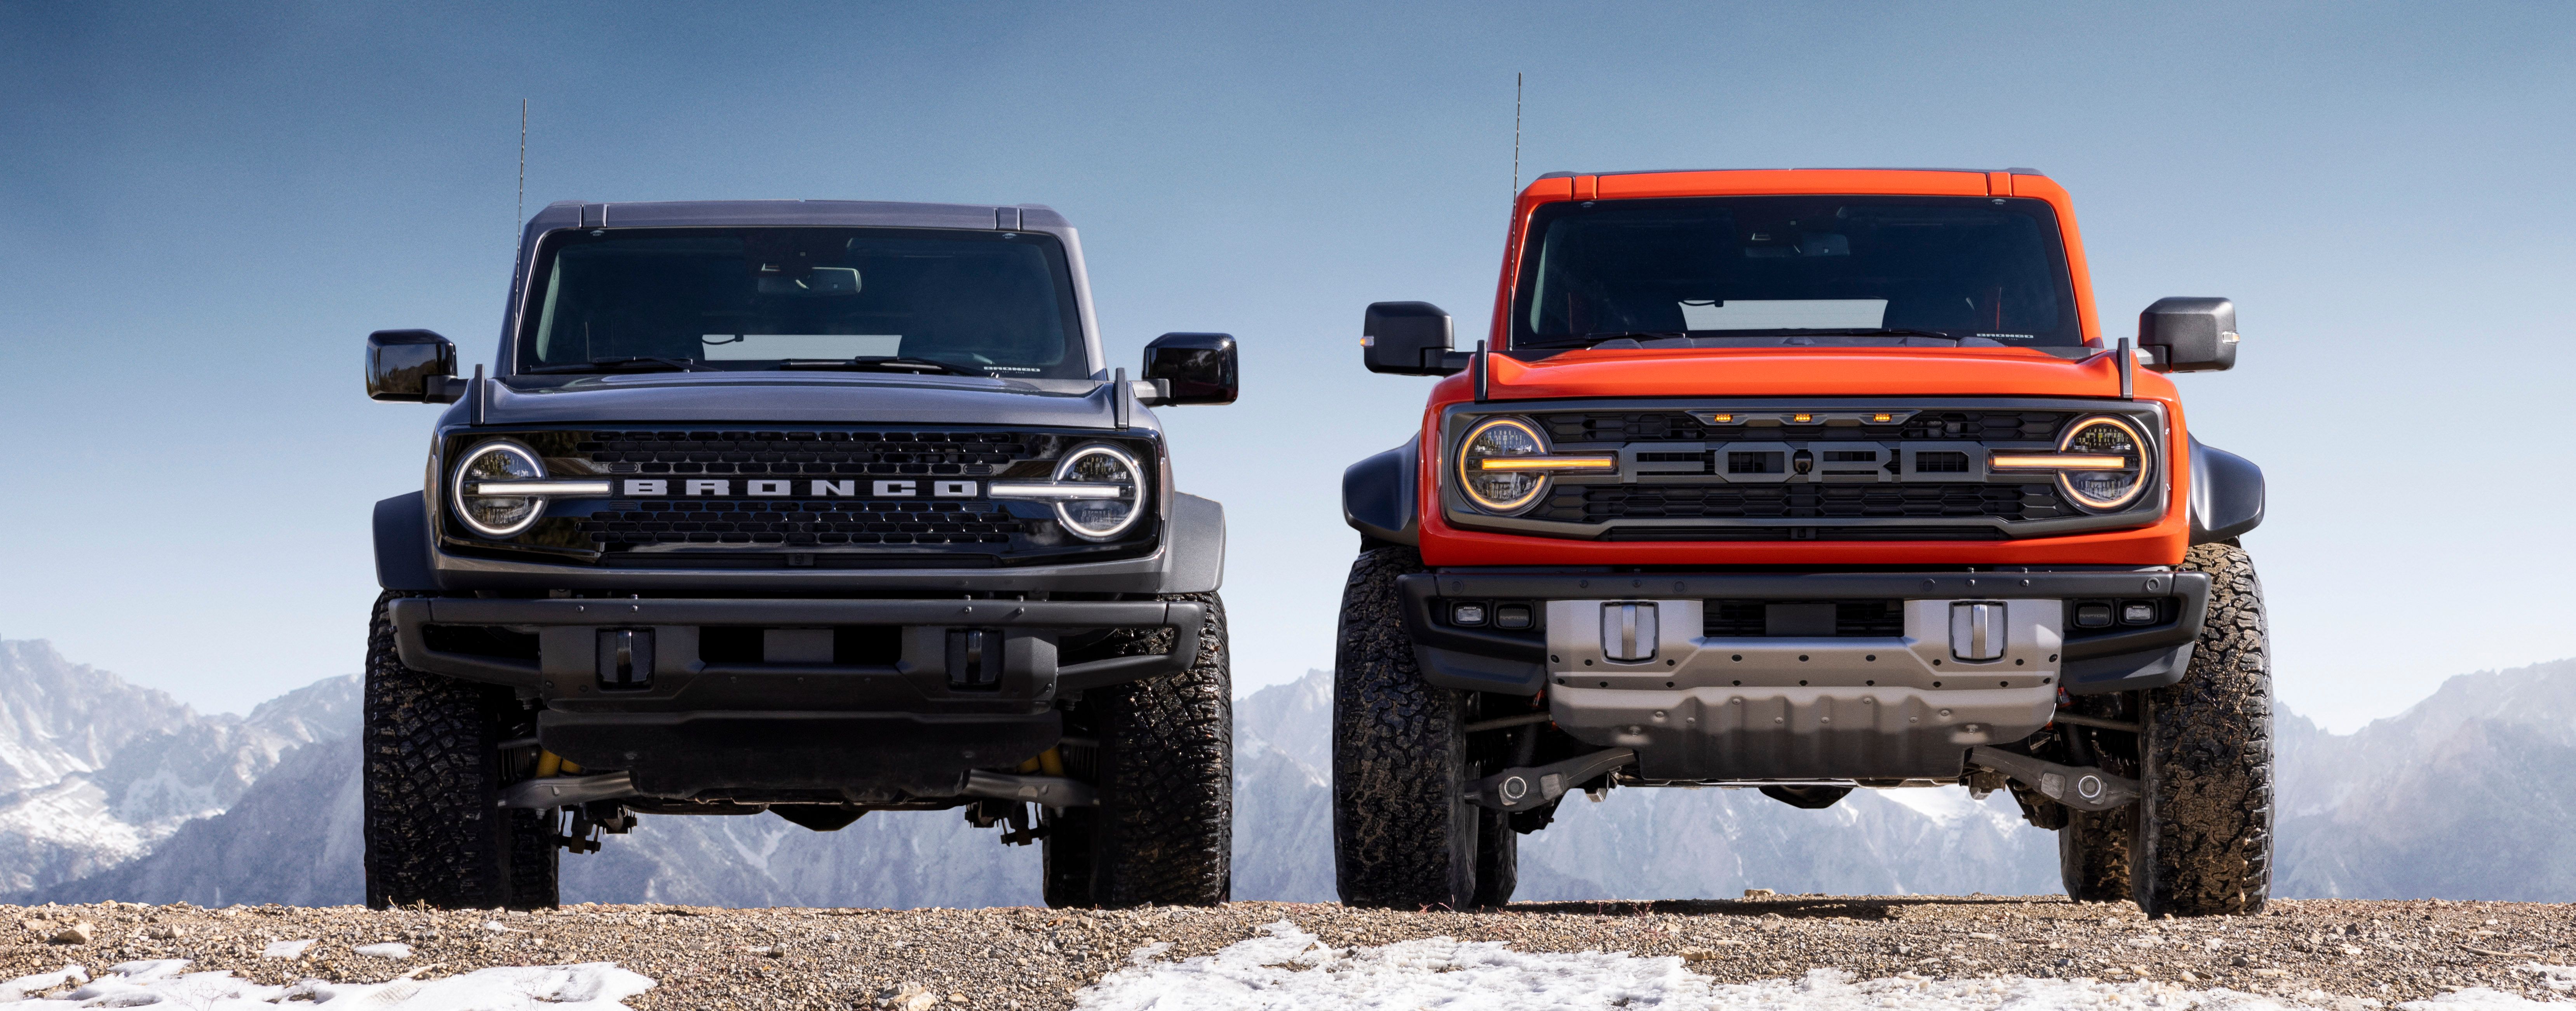 2023 Ford Bronco vs Bronco Raptor - Does The ‘Raptor’ Factor Add Value?